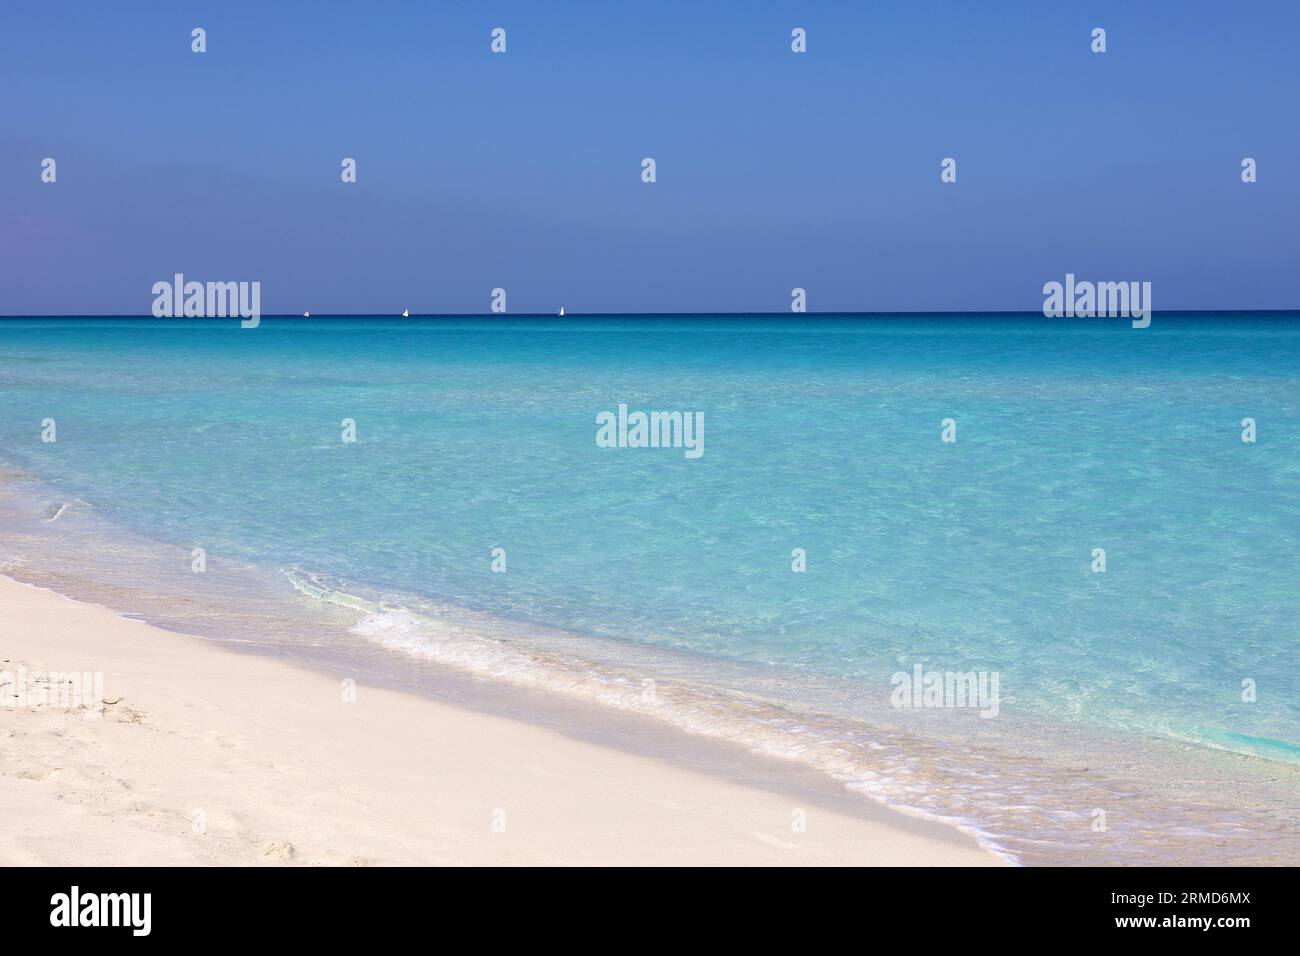 Spiaggia di mare vuota con sabbia bianca, vista delle onde azzurre e del cielo blu con le nuvole. Costa caraibica, sfondo per vacanze in una natura paradisiaca Foto Stock